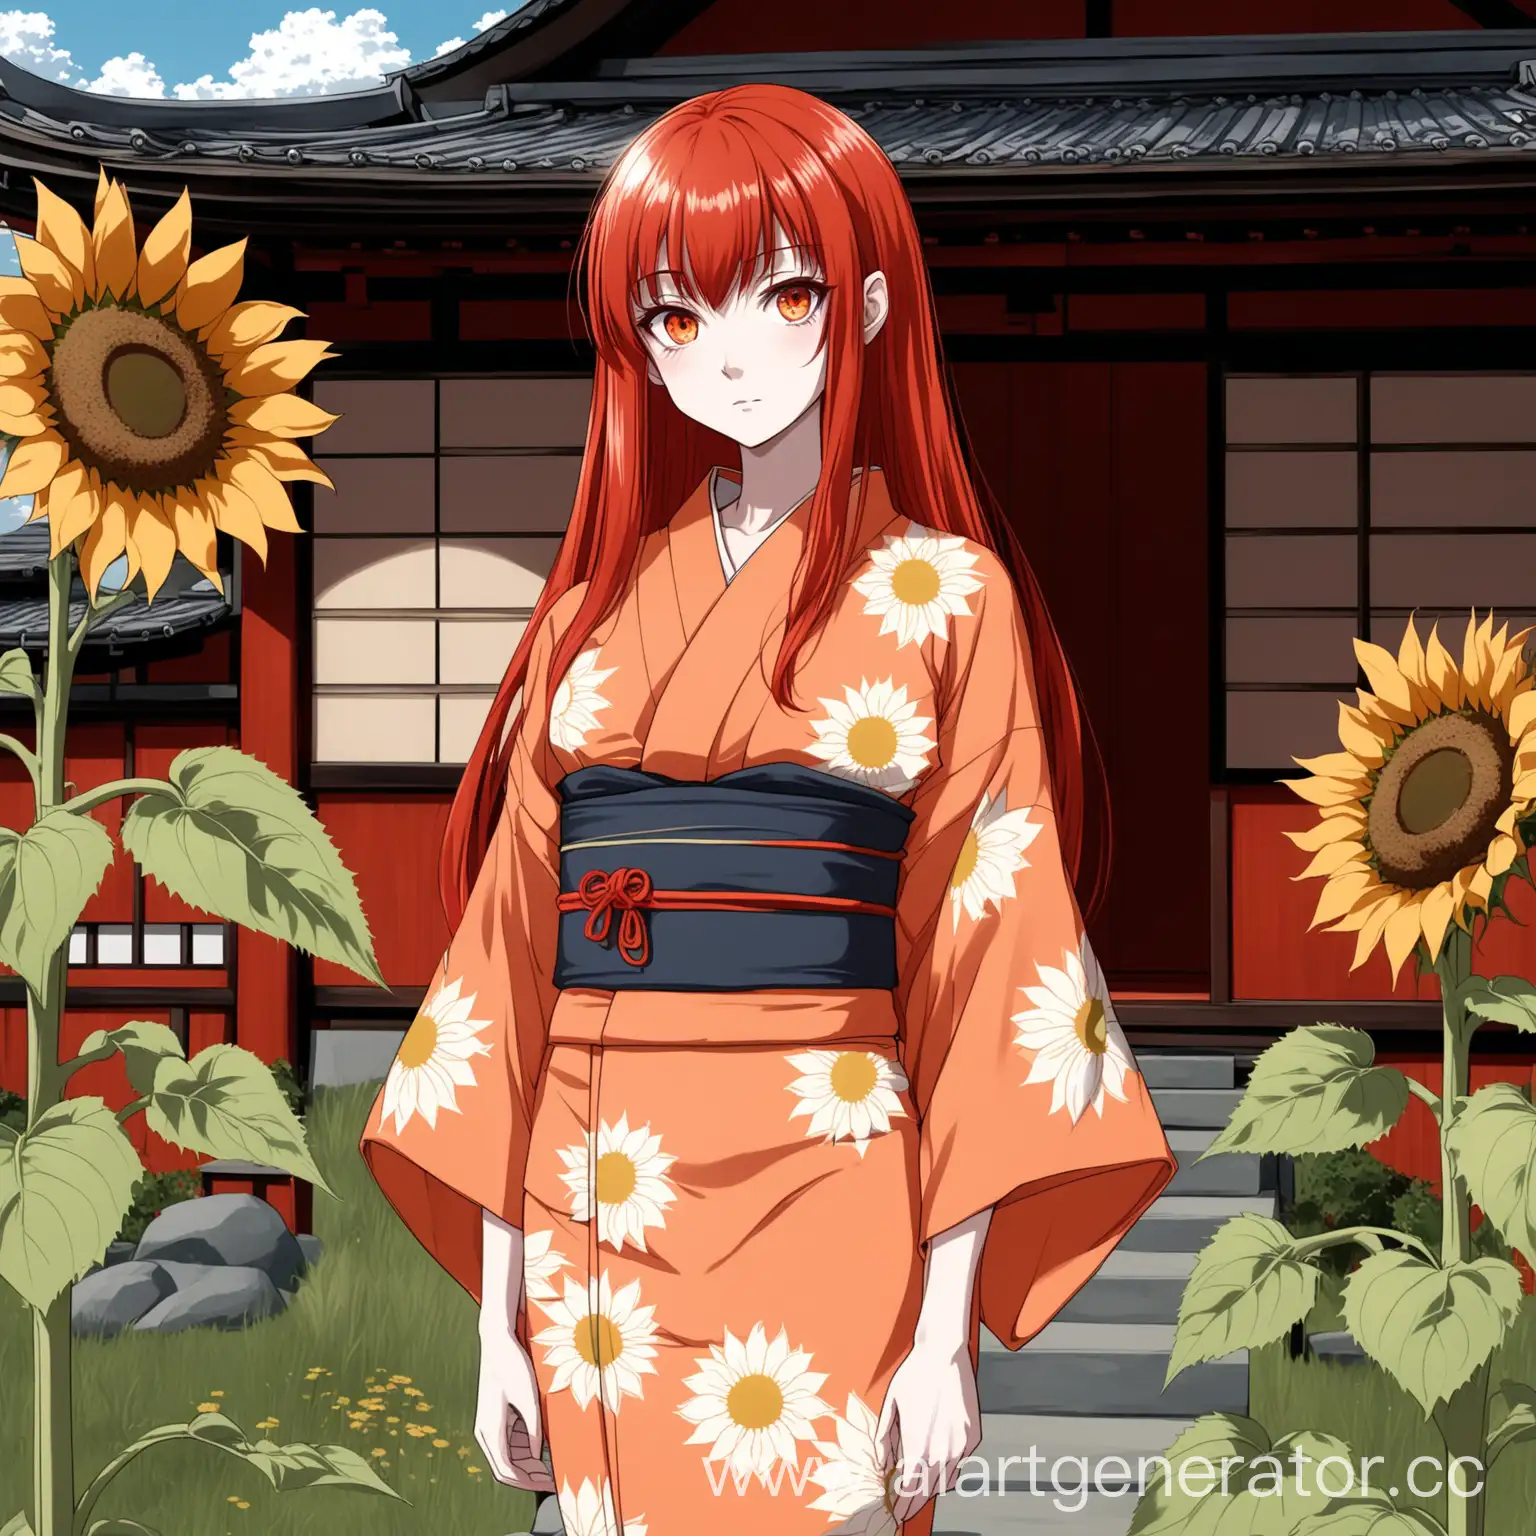 Девушка в стиле аниме с длинными рыжими волосами и чёлкой,светлая кожа,острые оранжевые глаза, худощавое телосложение,одета в кимоно салатового цвета с подсолнухами,стоит на фоне японского домика